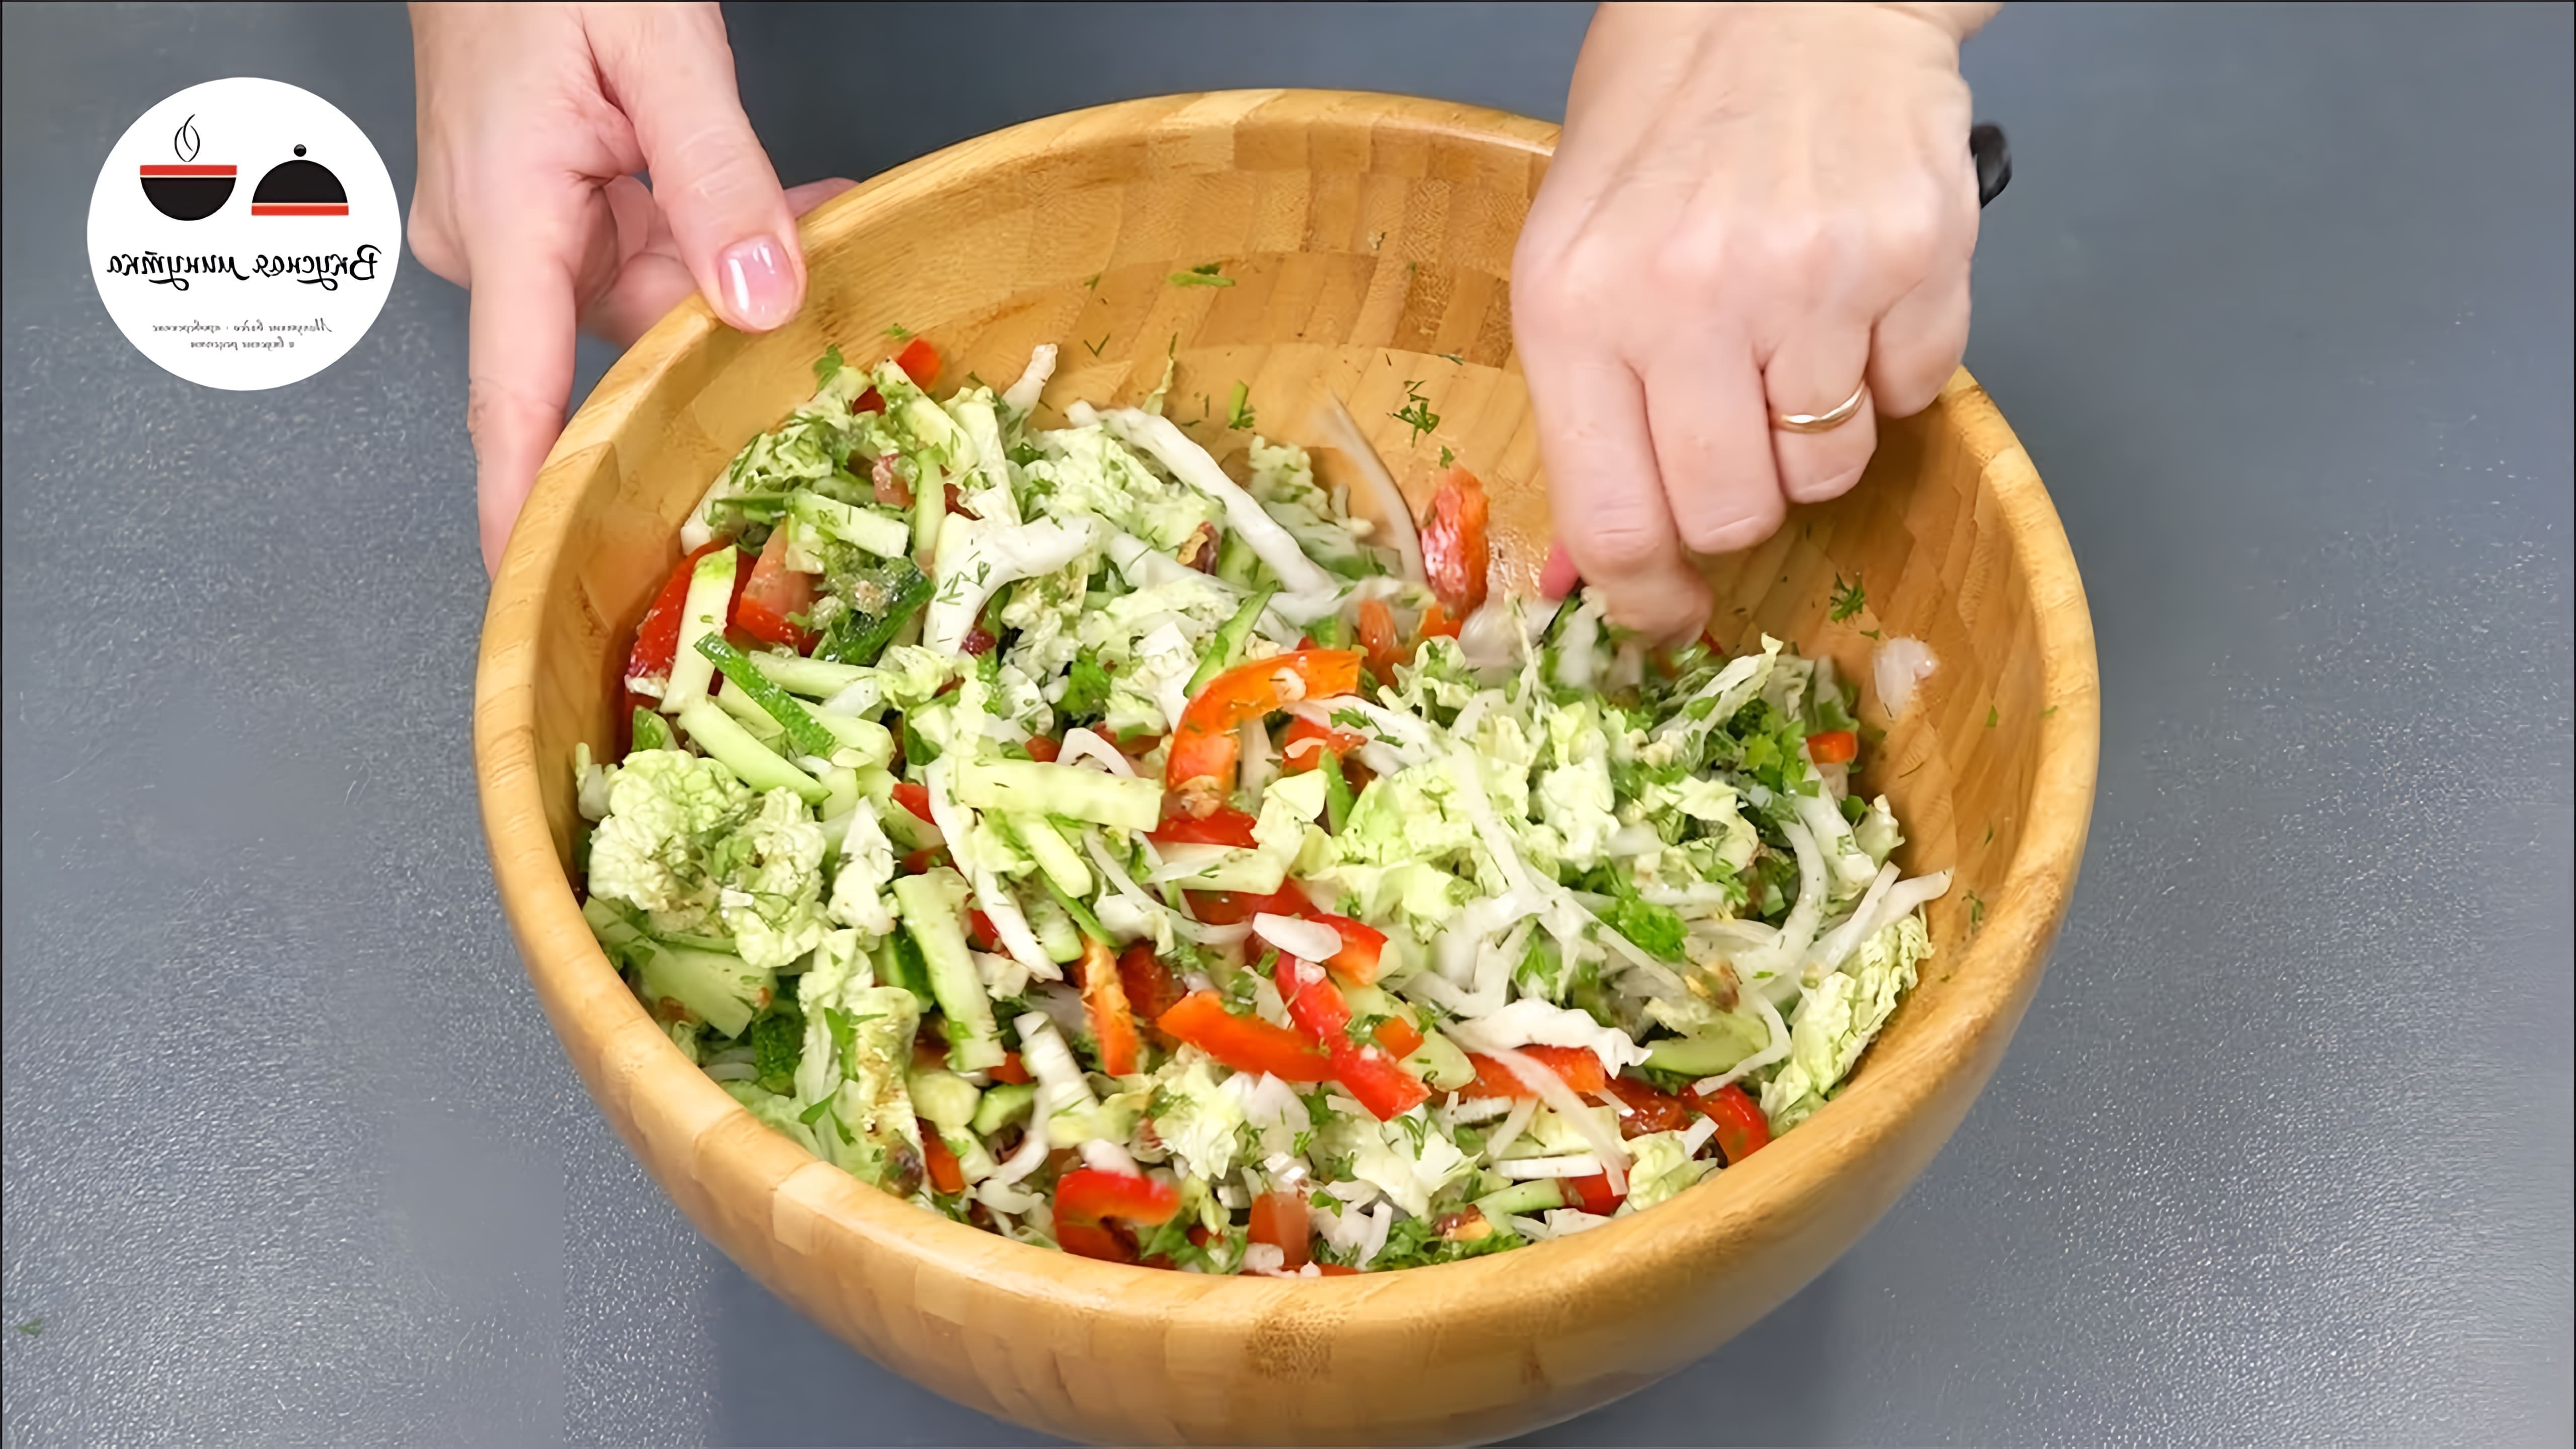 В этом видео автор делится рецептом салата из свежих овощей, который удивил ее